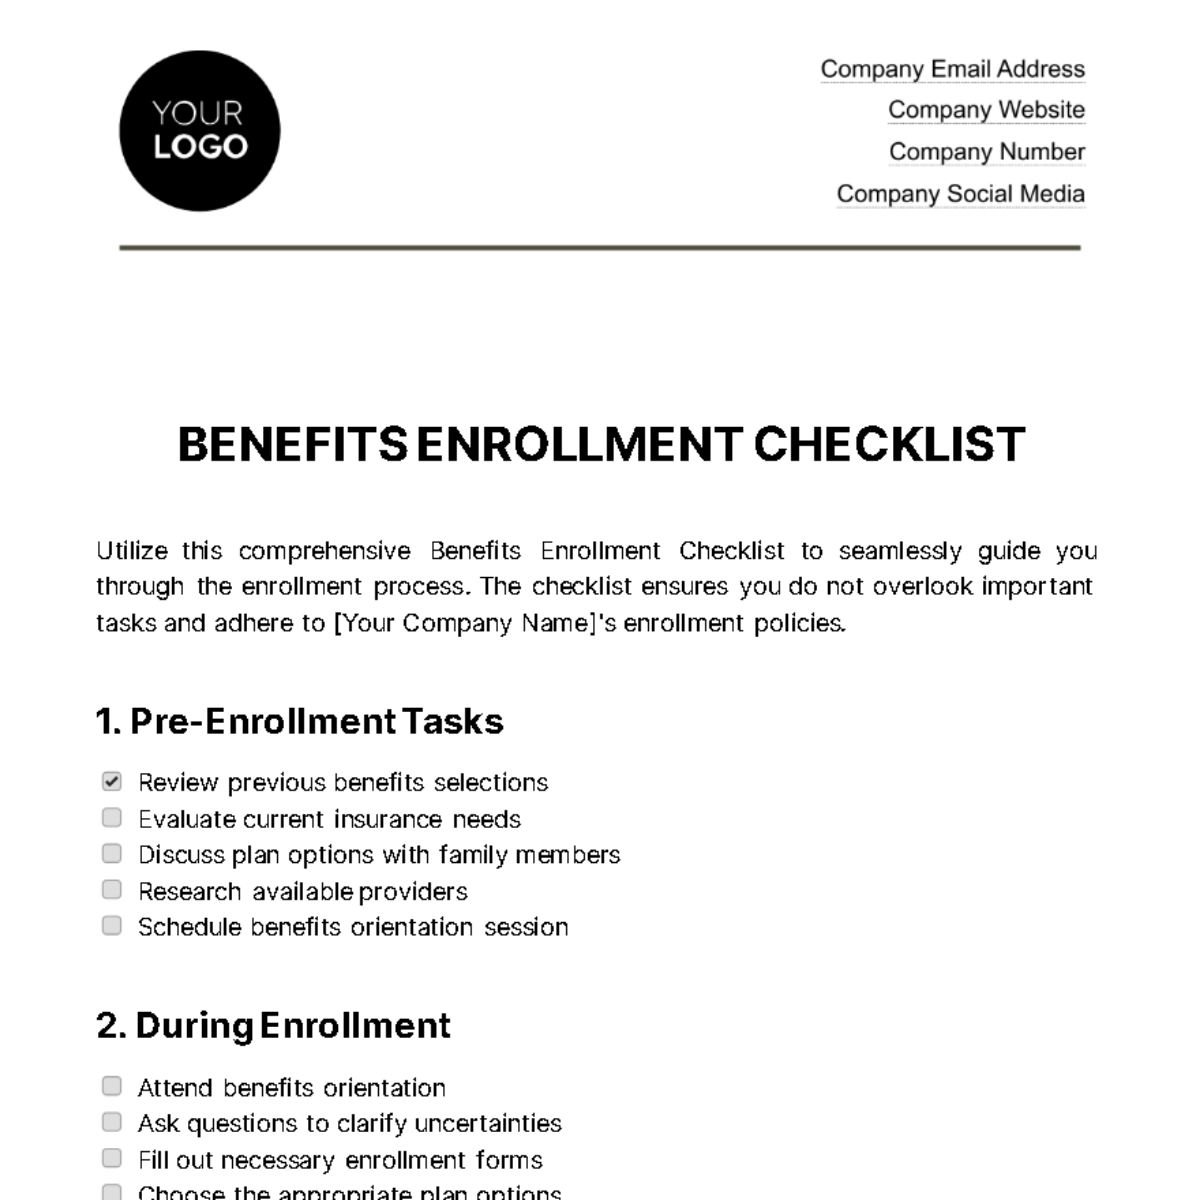 Benefits Enrollment Checklist HR Template